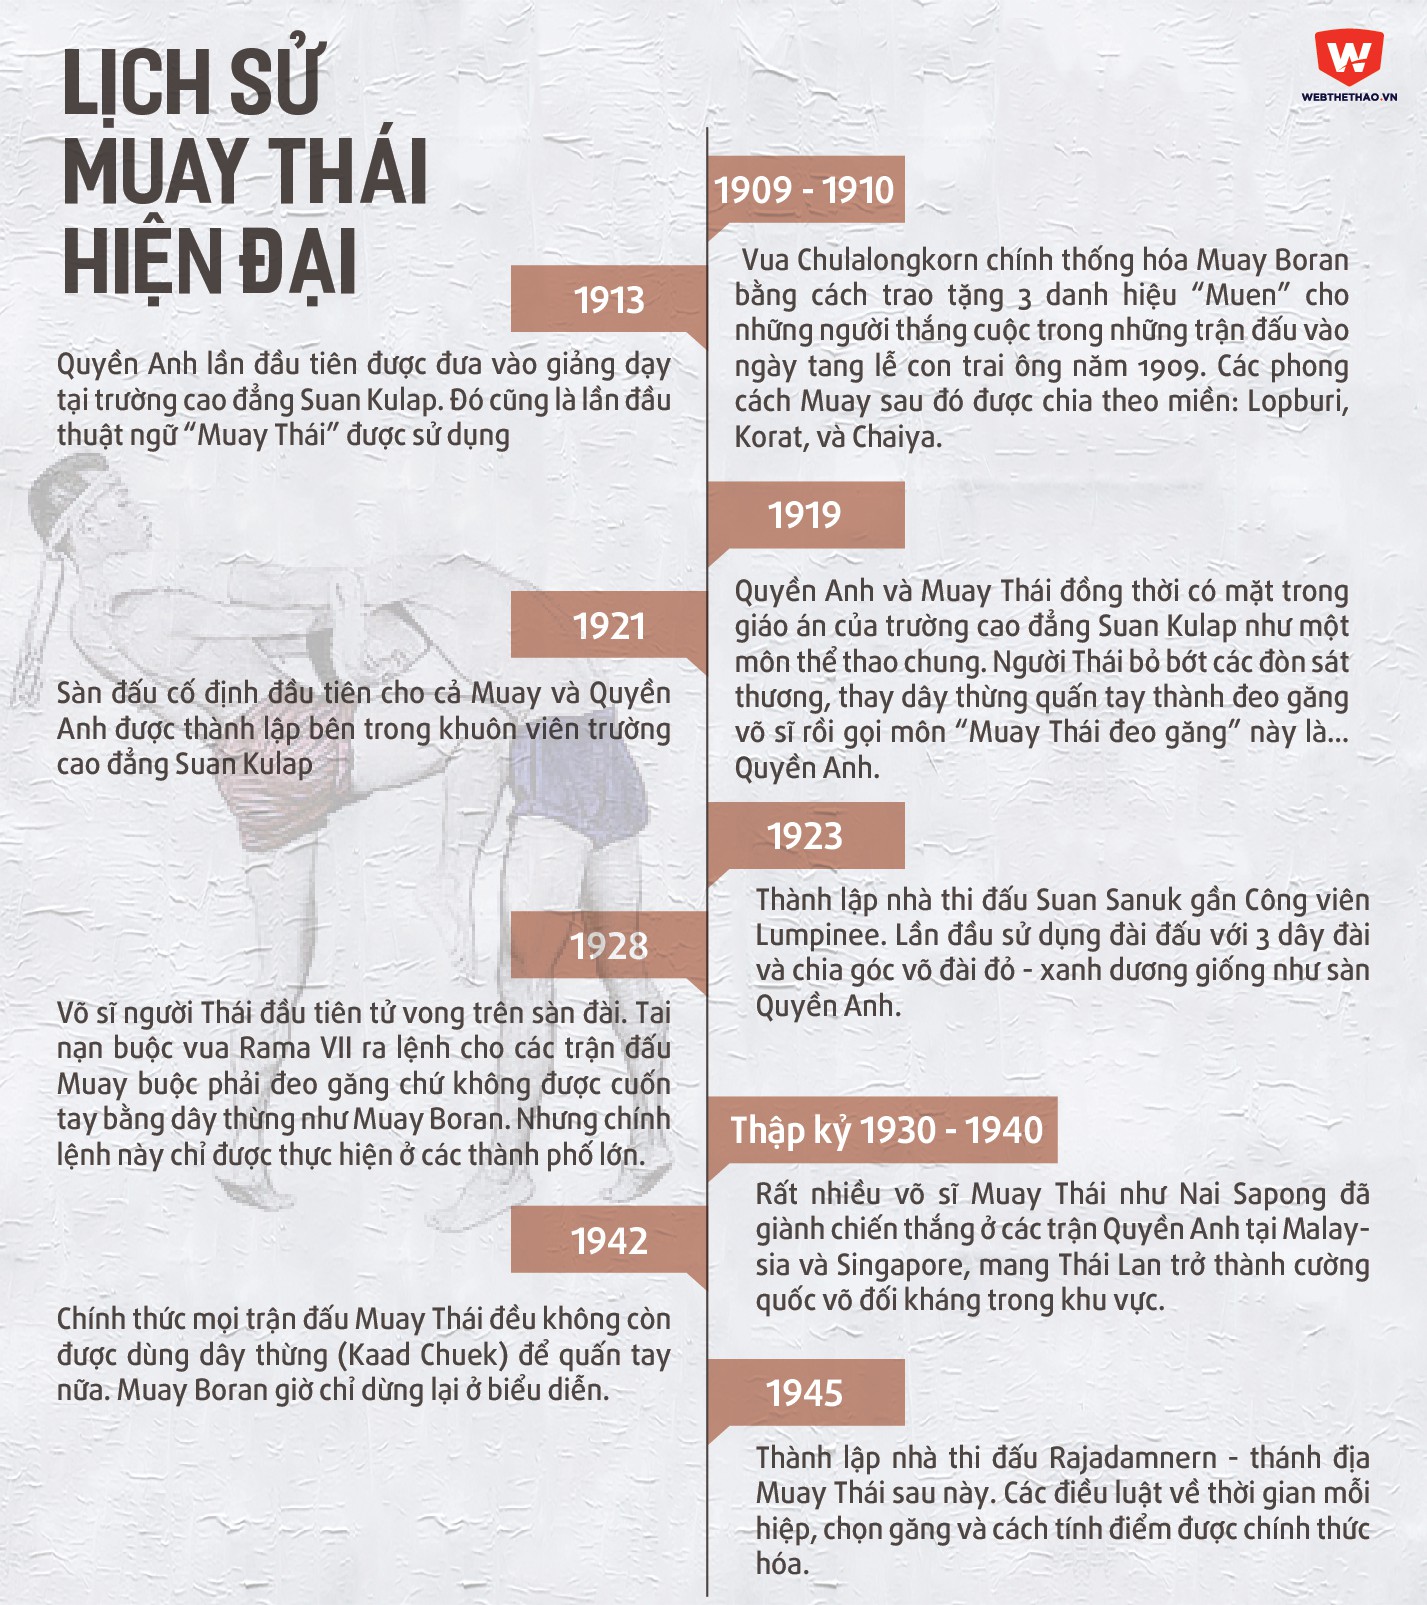 Lịch sử Muay Thái hiện đại